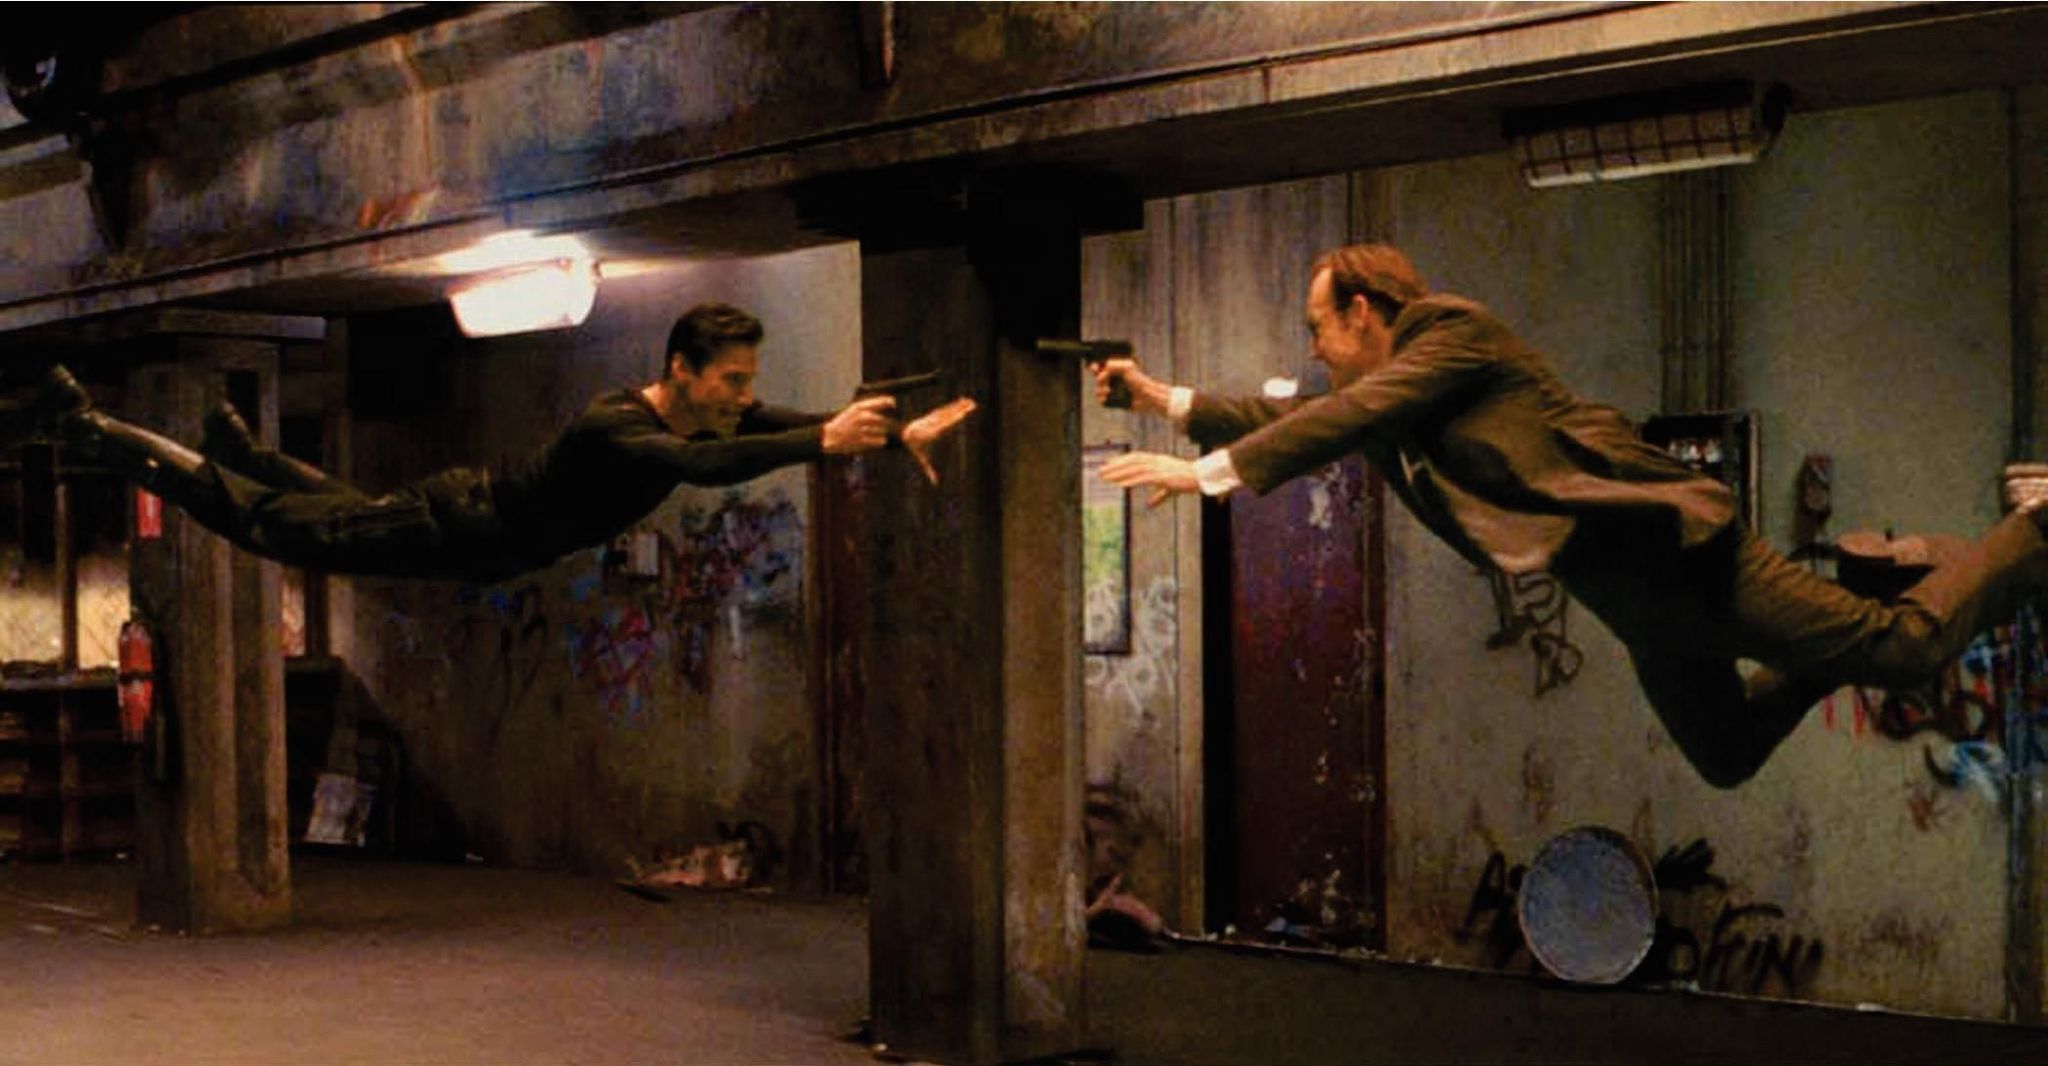 The Matrix (1999) still